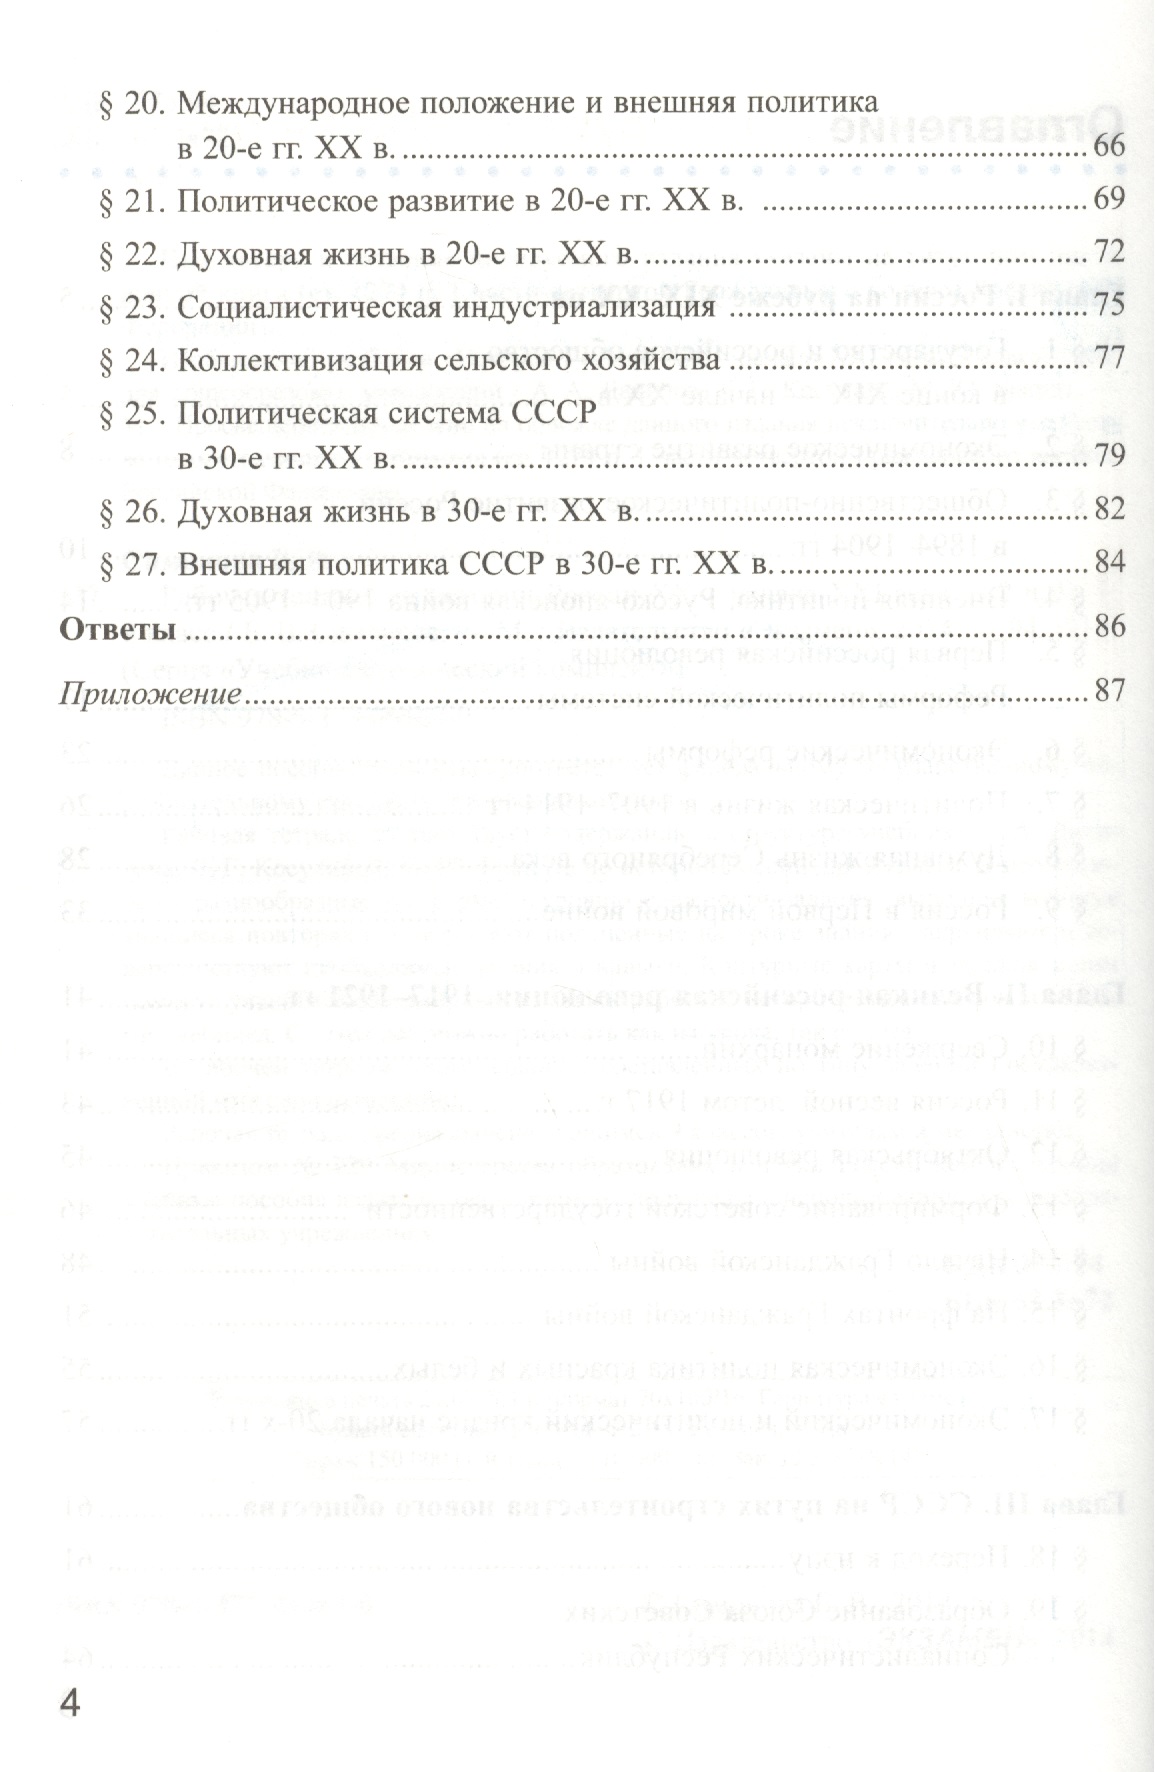 Ответы на вопросы по истории россии 9 класс данилов косулина брандт